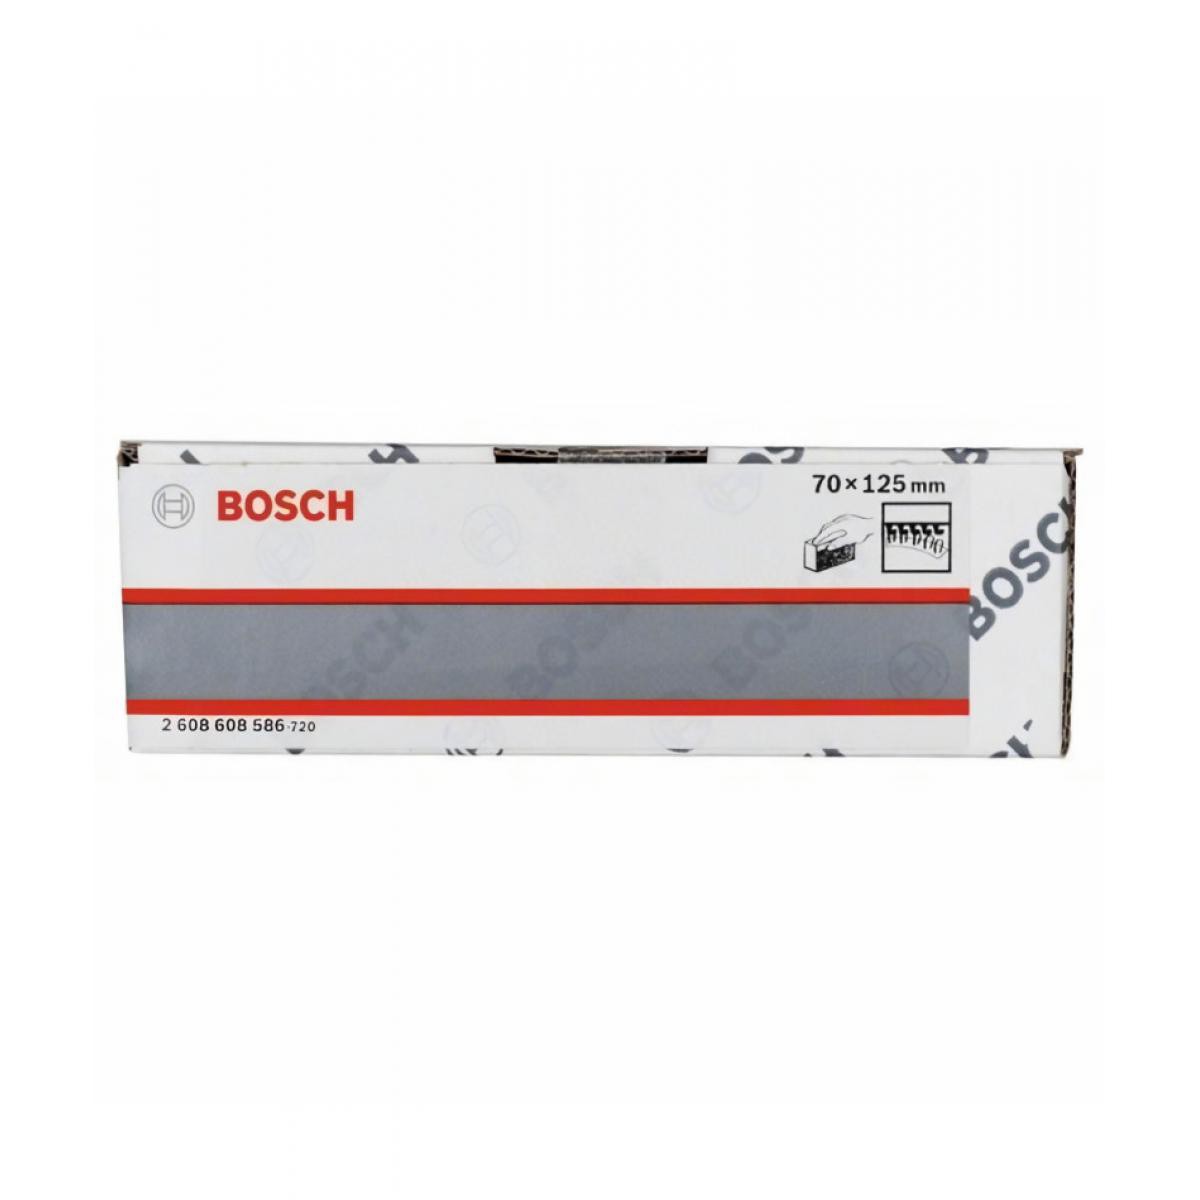 Bosch - BOSCH Cale a poncer bloc ponçage manuel - double face - 70 x 125 mm - Binettes, serfouettes, grattoirs, ratissoires